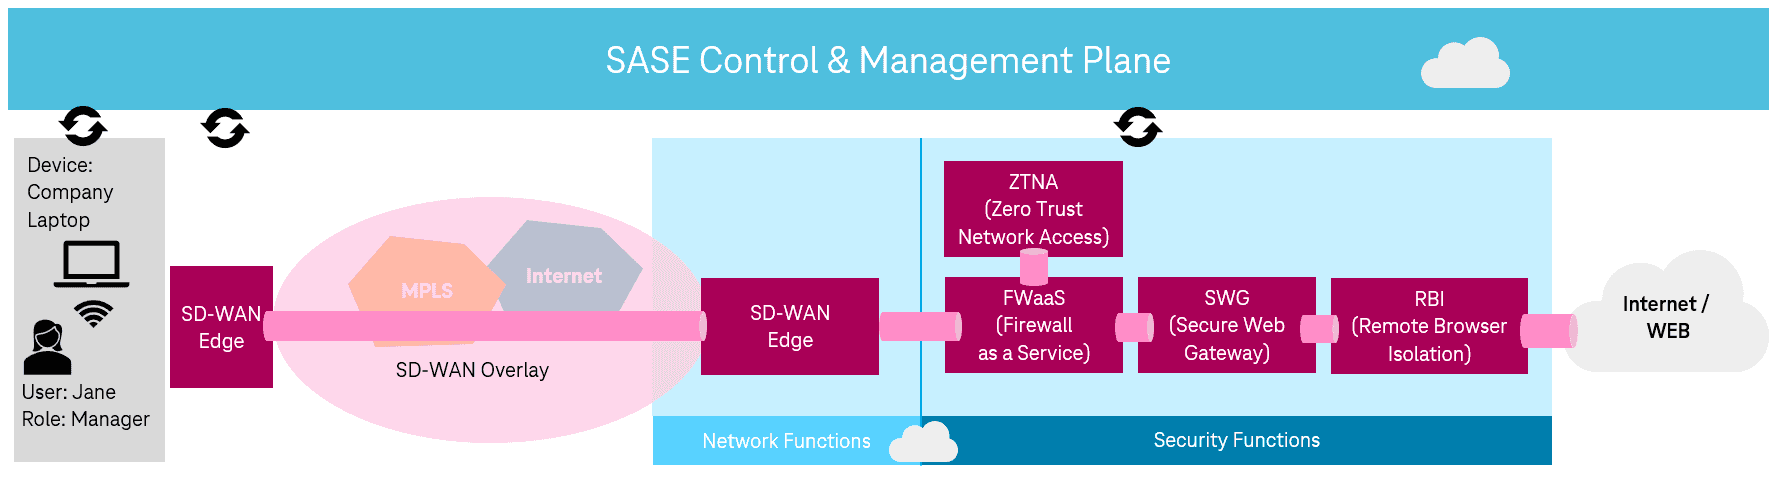 Zugang zum Internet aus dem Unternehmensnetz mit SASE-Ansatz